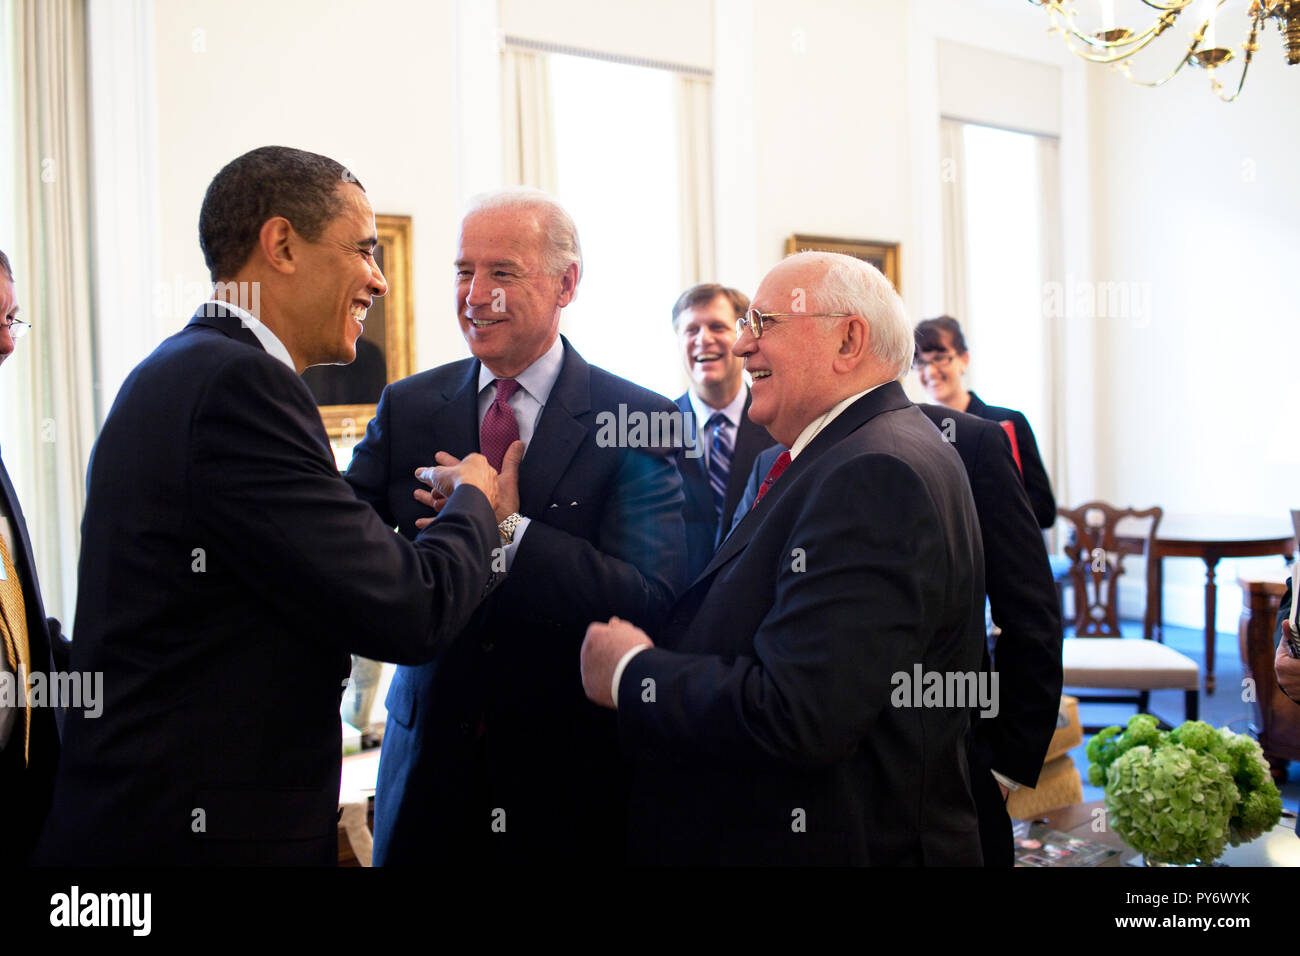 Le président Barack Obama gouttes par VP Joe Biden's réunion avec l'ancien président de l'Union soviétique Mikhaïl Gorbatchev dans le bureau du vice-président, Aile ouest 3/20/09. Photo Officiel de la Maison Blanche par Pete Souza Banque D'Images